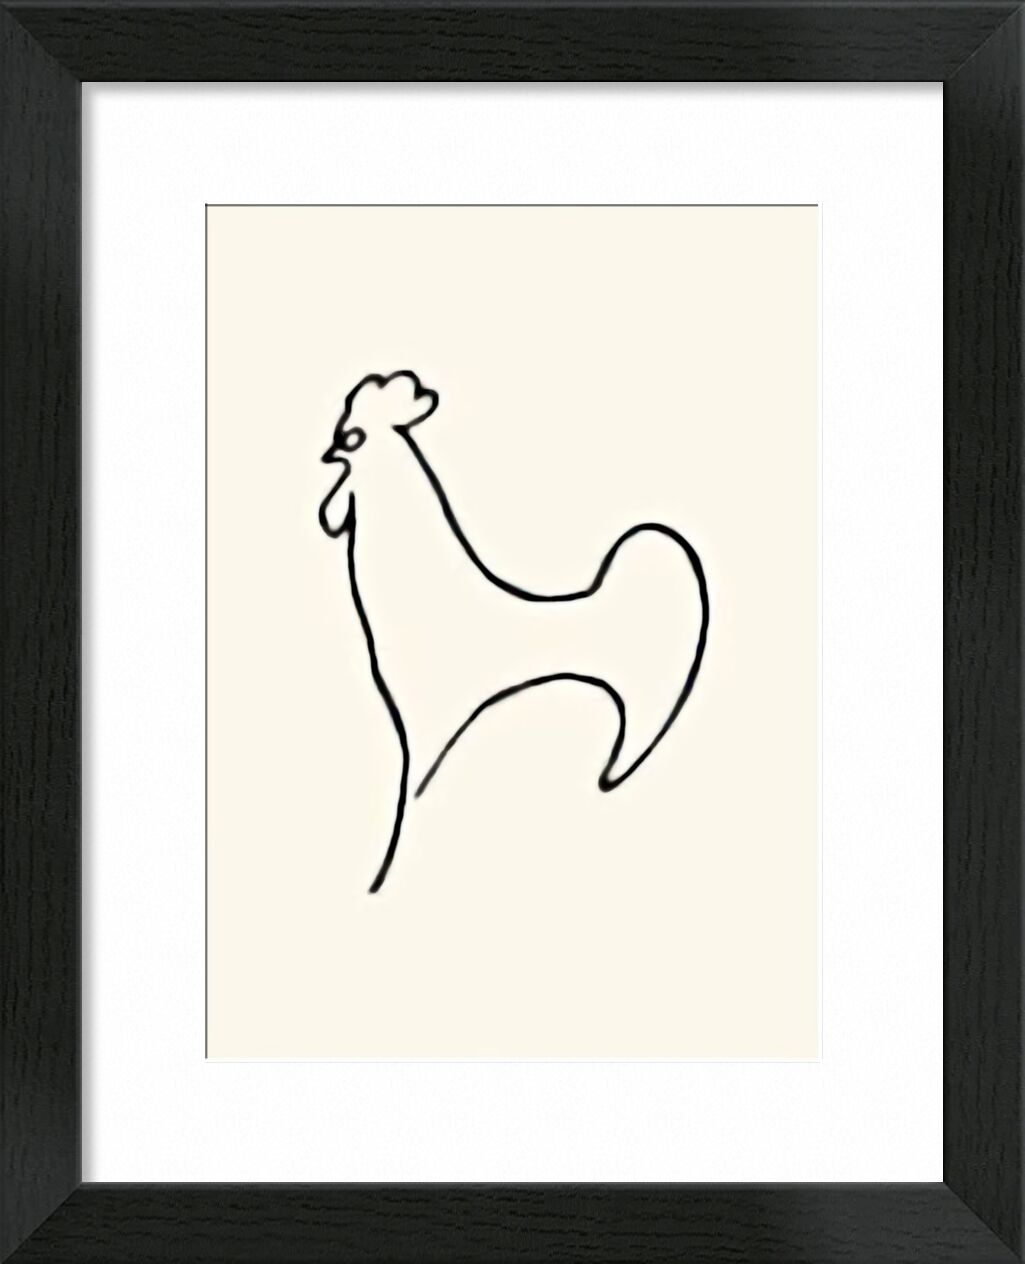 Coq-Detail - Picasso desde Bellas artes, Prodi Art, dibujo lineal, dibujo, gallo, picasso